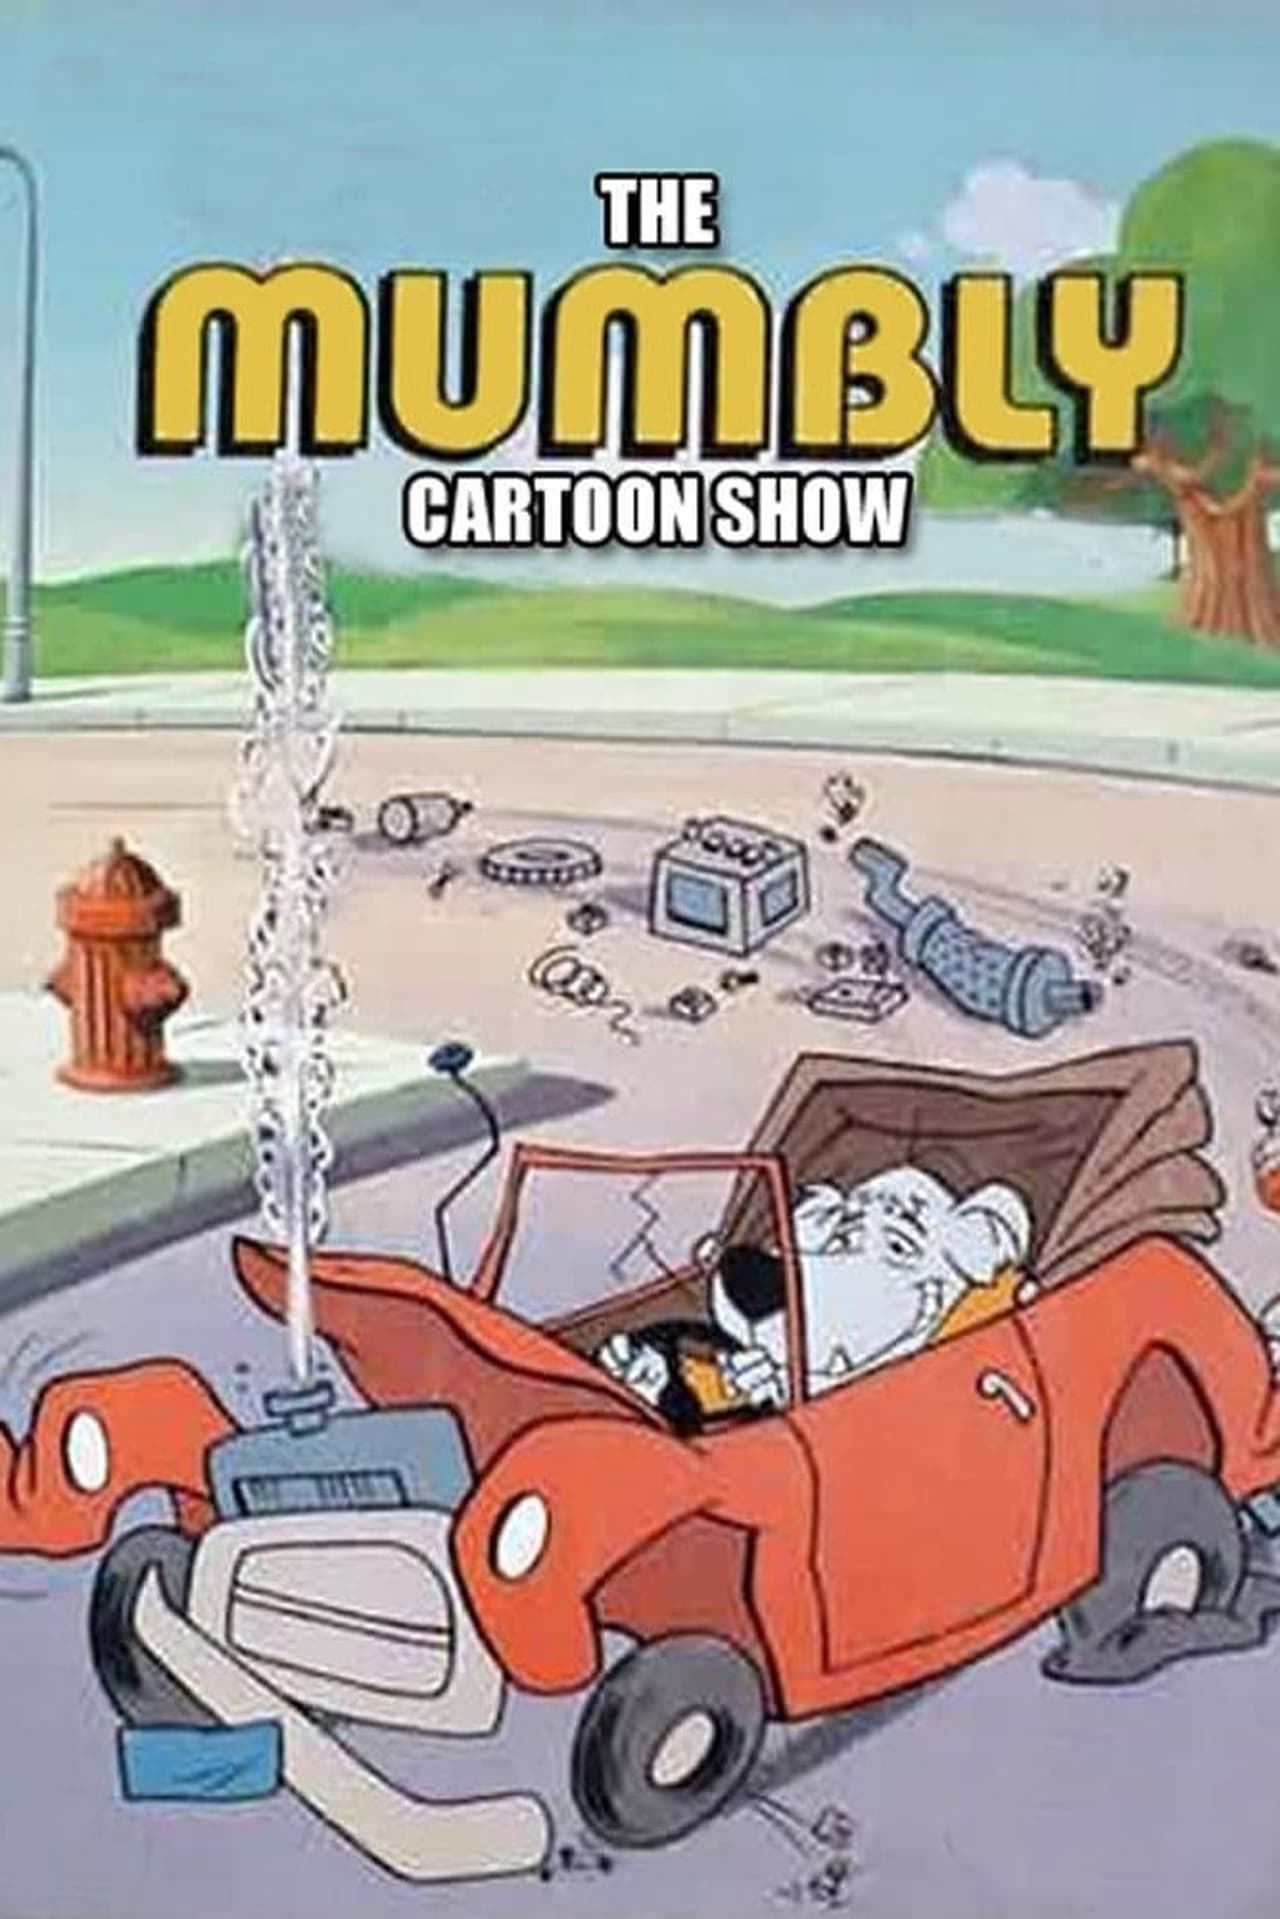 The Mumbly Cartoon Show (1976)